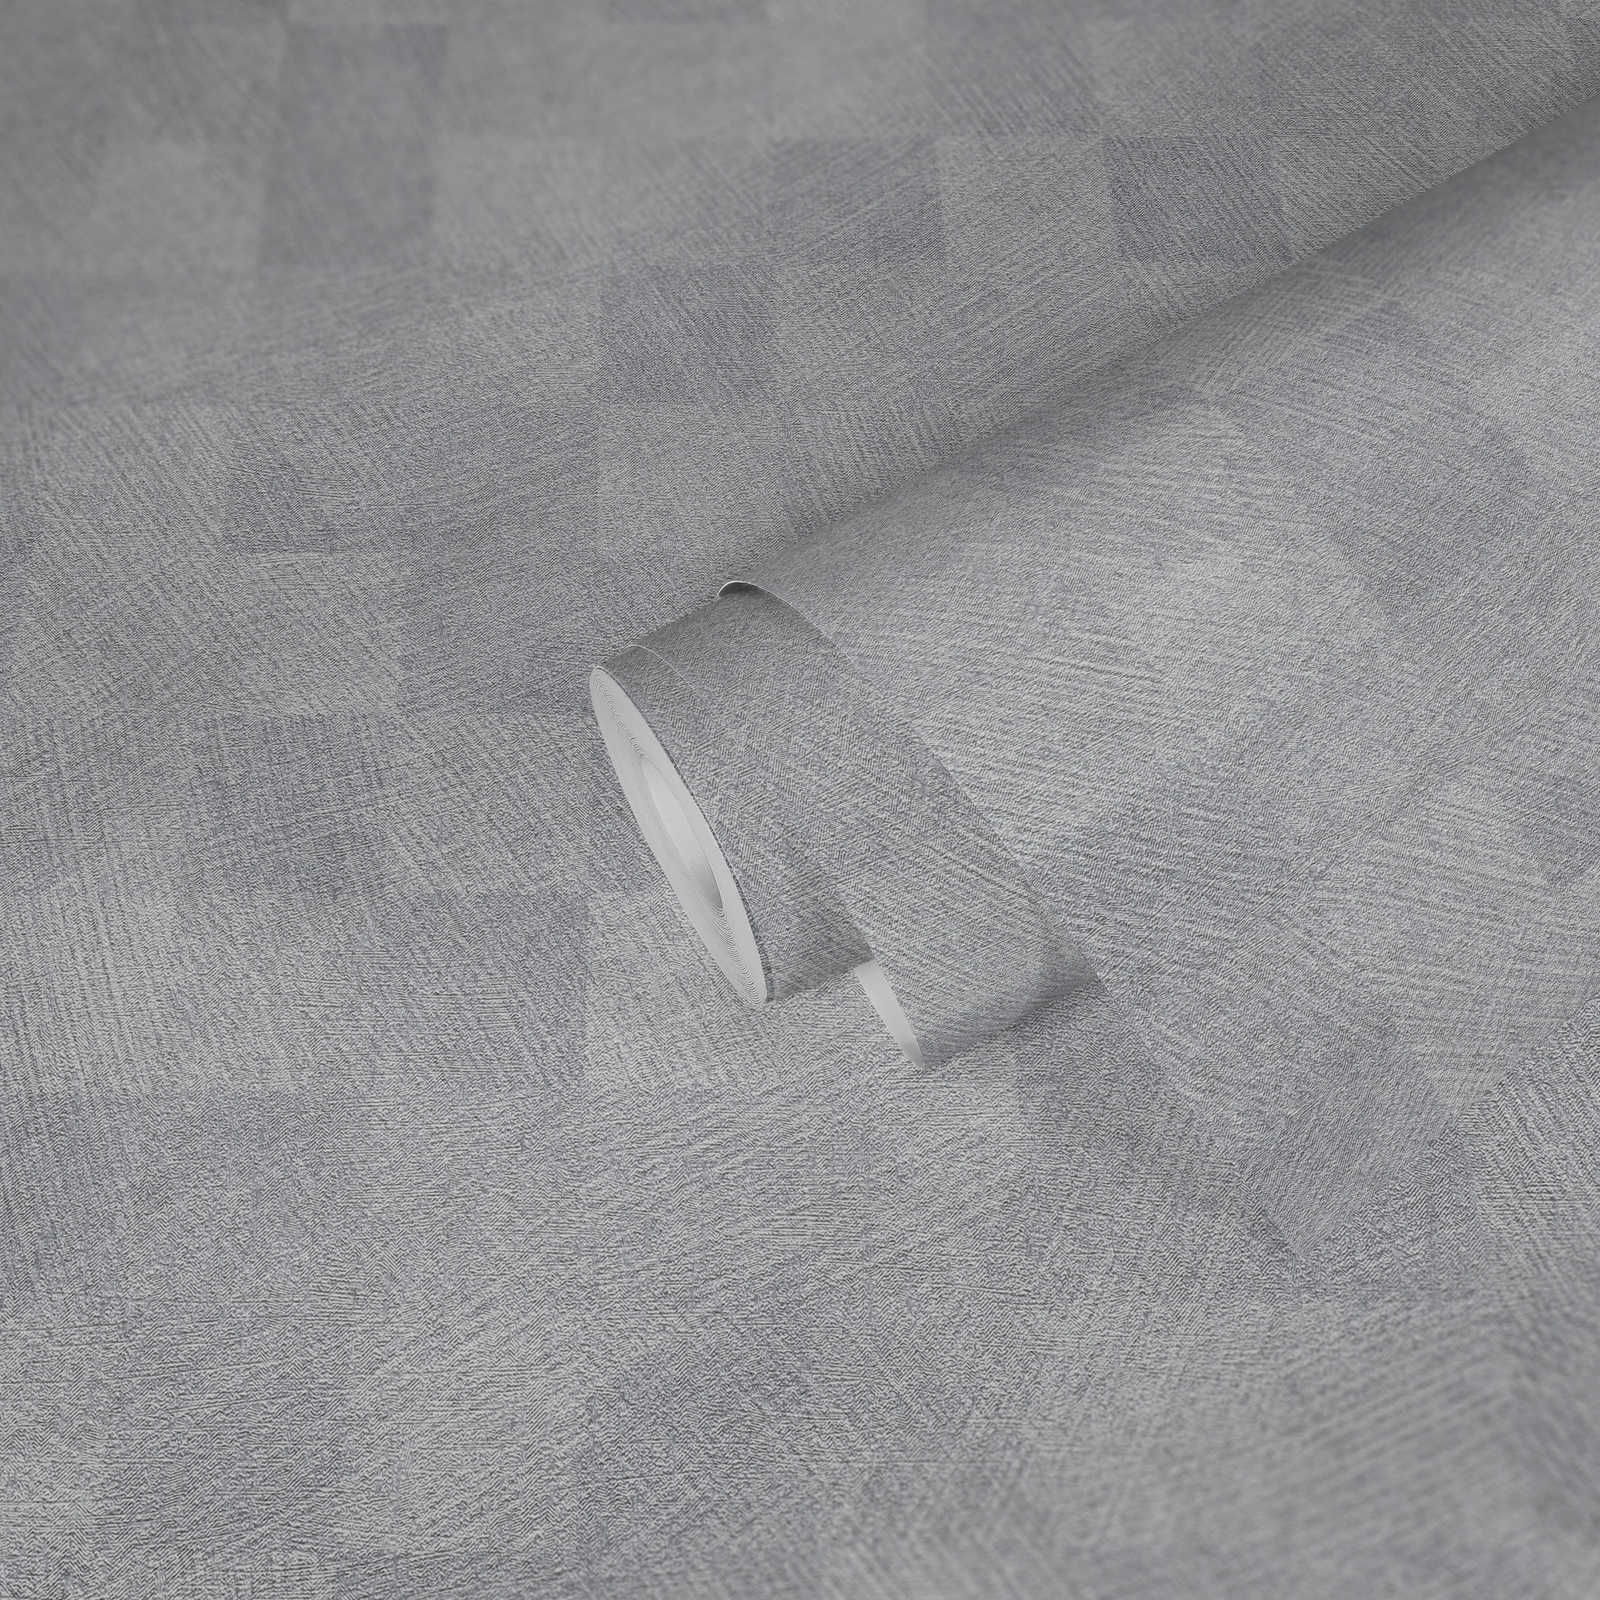             Metallic behang ruitjespatroon met glanseffect - grijs
        